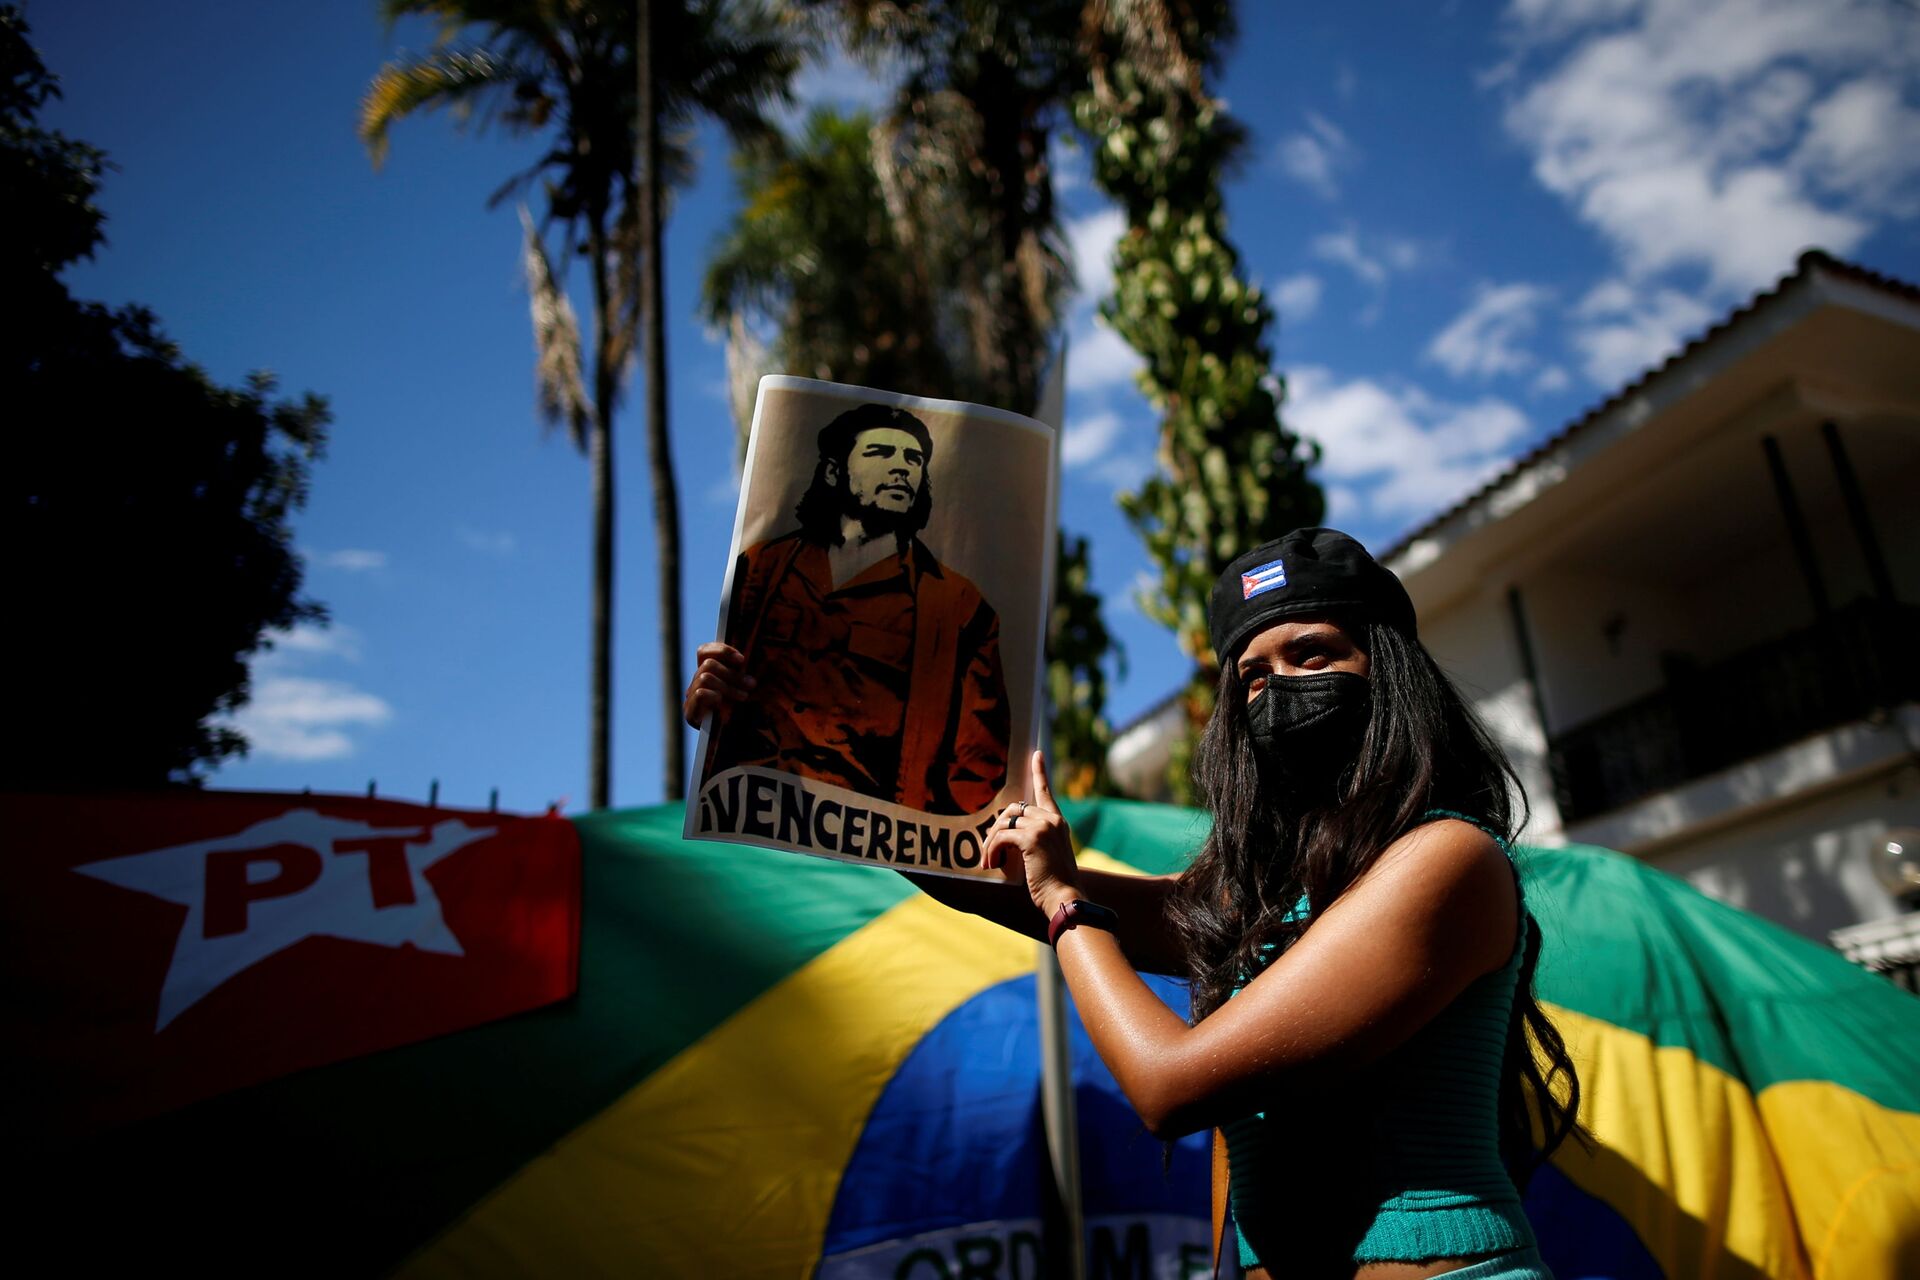 Poderia Lula 'pacificar' América Latina após 'legado de Bolsonaro' se ganhar em 2022? - Sputnik Brasil, 1920, 29.07.2021